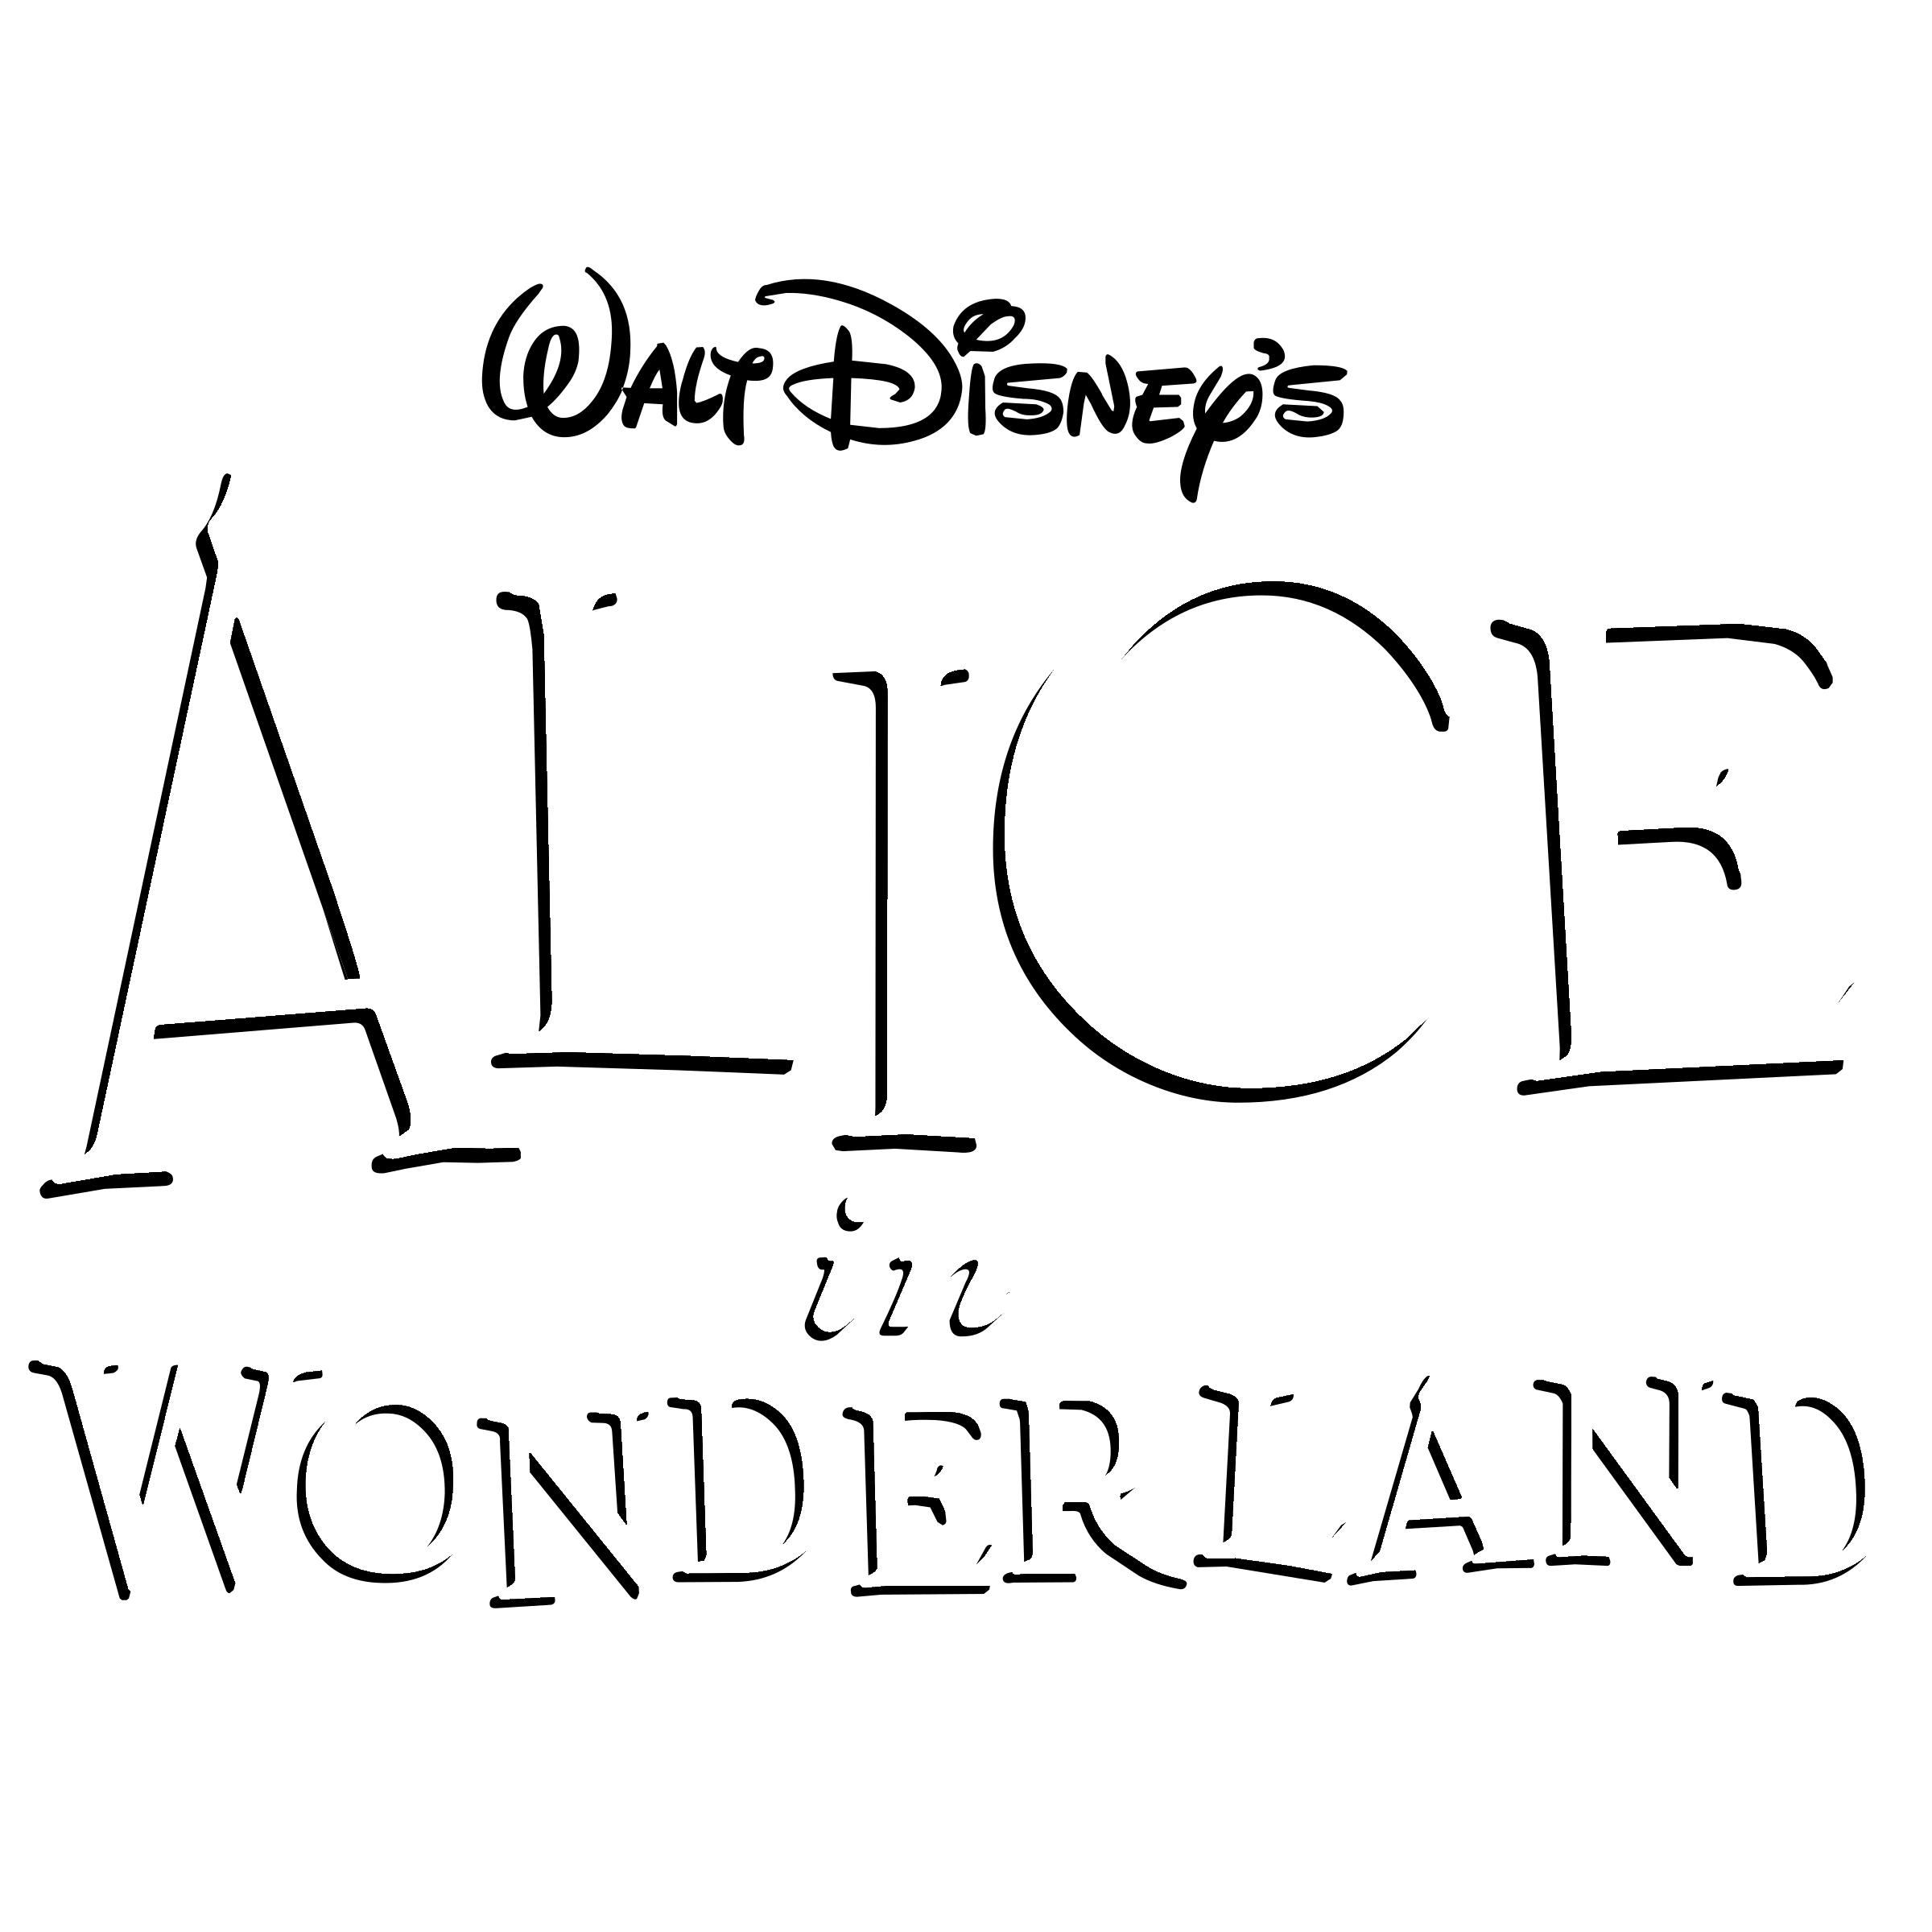 Disney's Alice in Wonderland Logo - Disney's Alice in Wonderland Logo PNG Transparent & SVG Vector ...